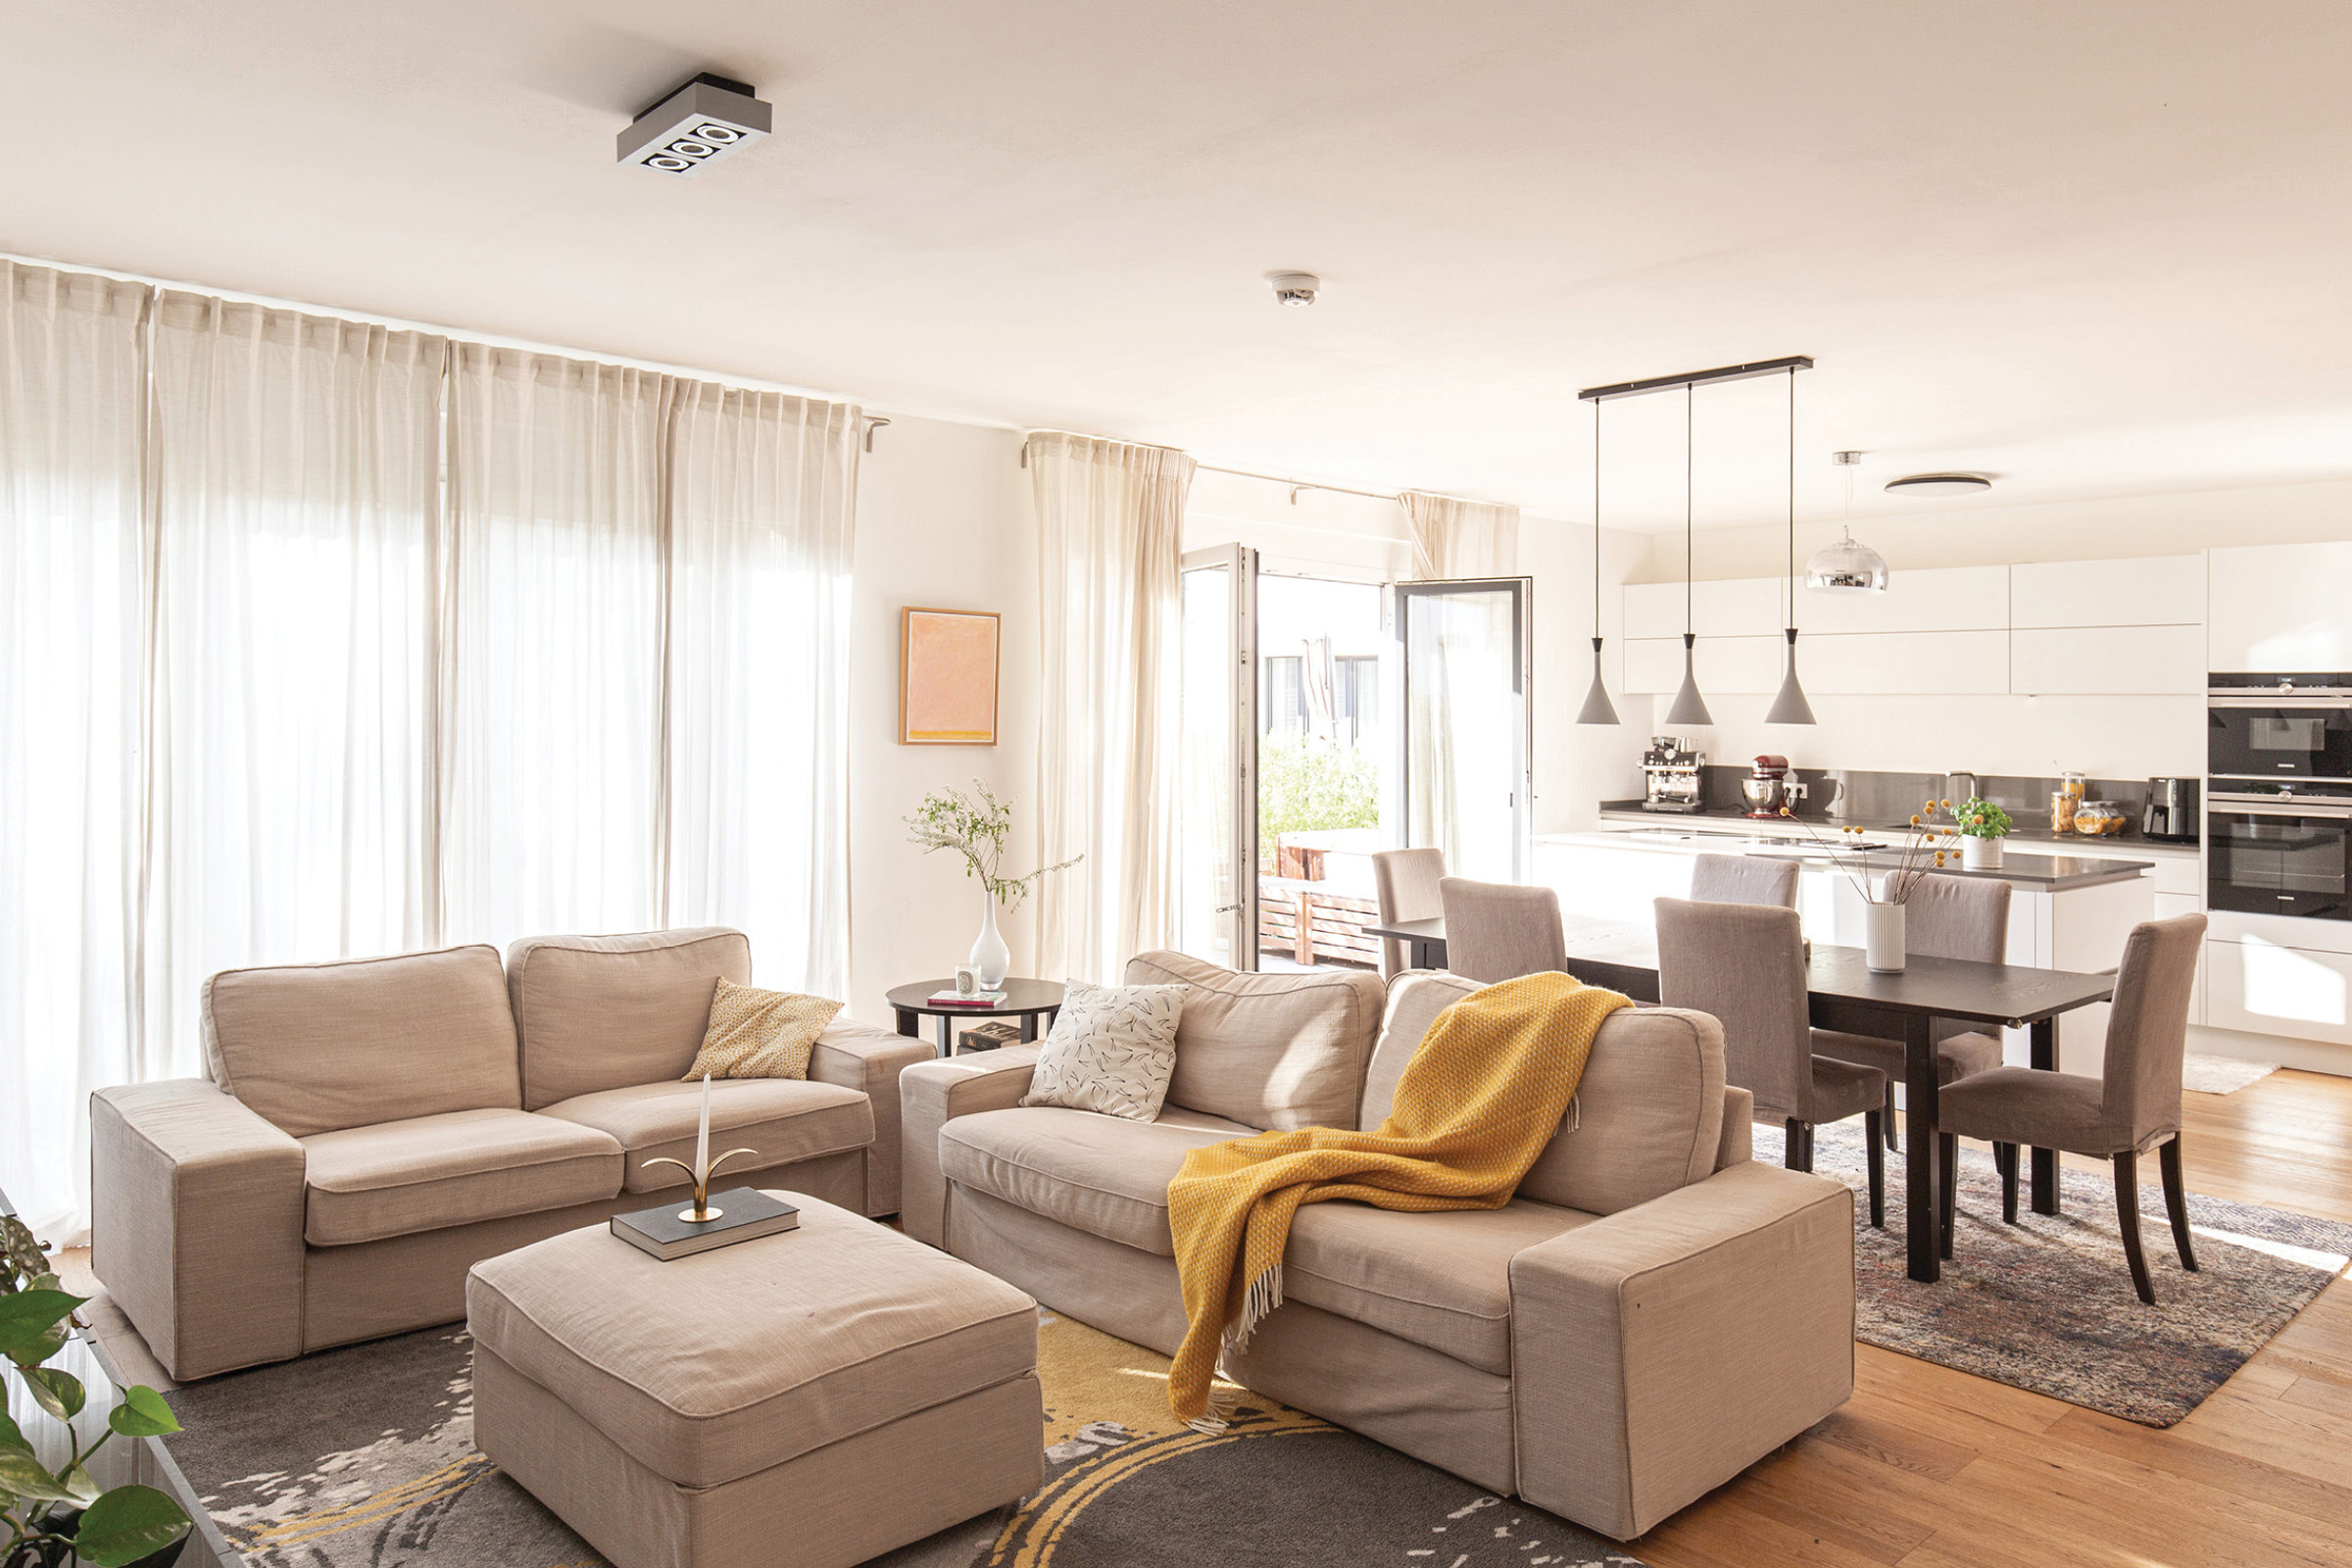 Stilvolles, gesundes und modernes Wohnen in der luxuriösen Familienwohnung in Wilhelmsruh